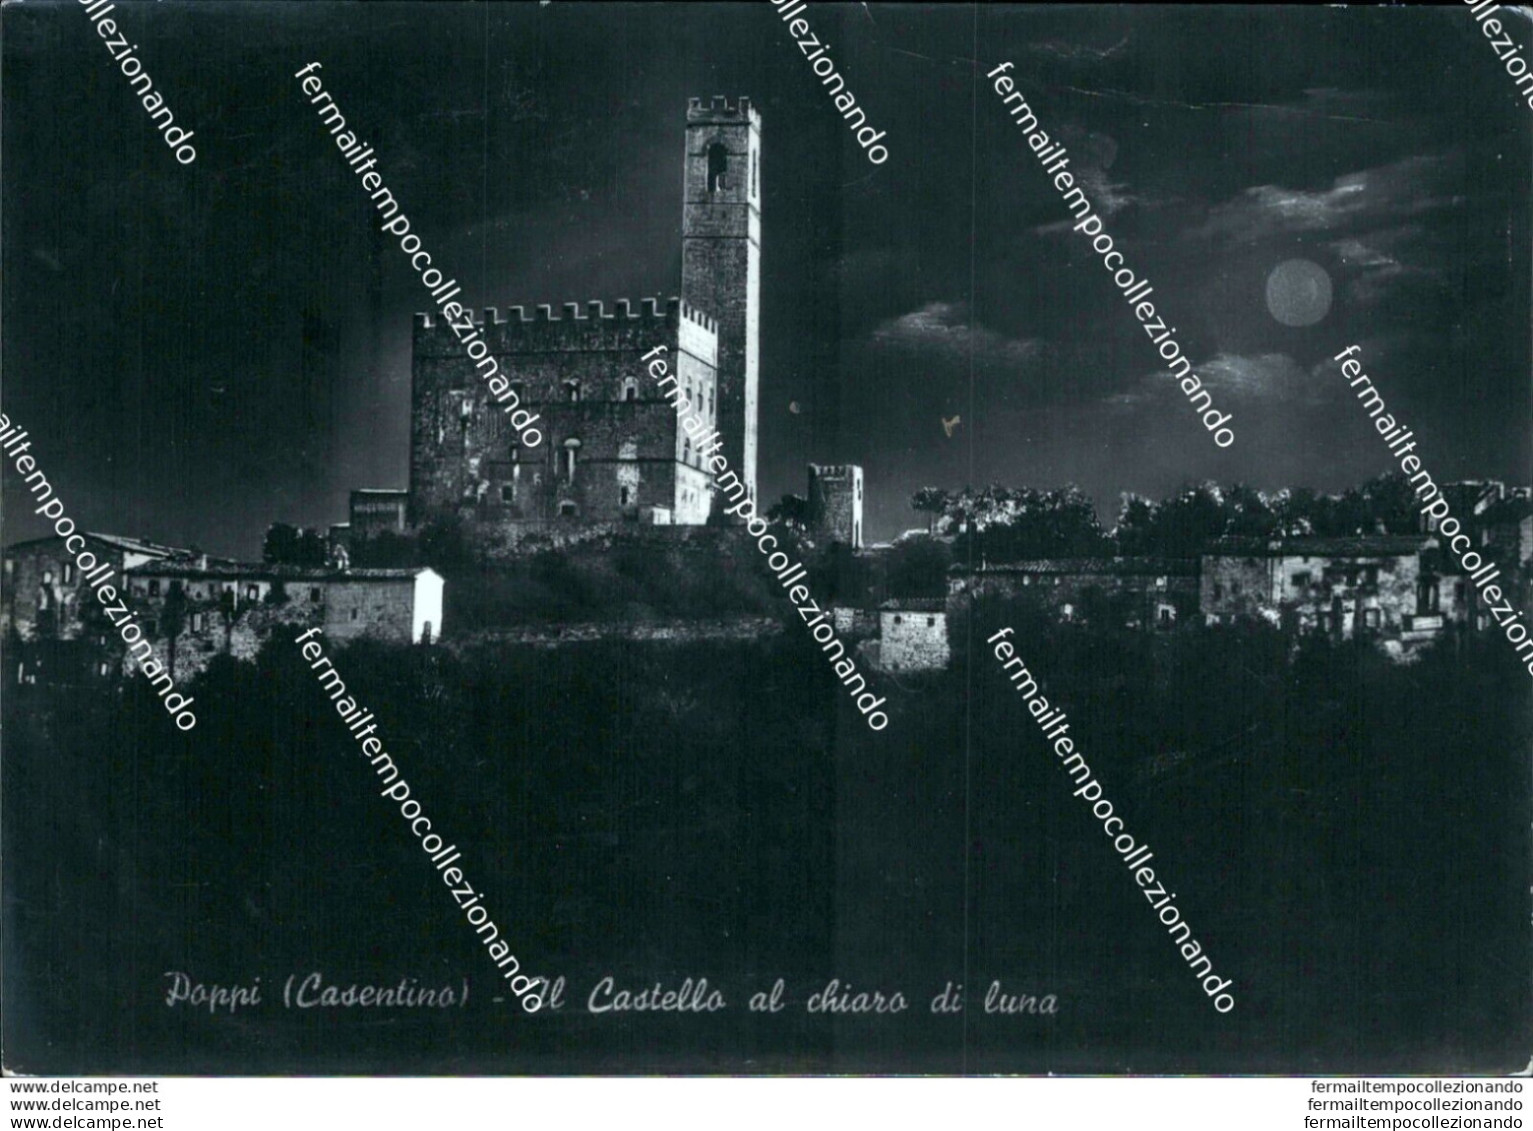 Br189 Cartolina Poppi Casentino Il Castello Al Chiaro Di Luna Arezzo Toscana - Arezzo